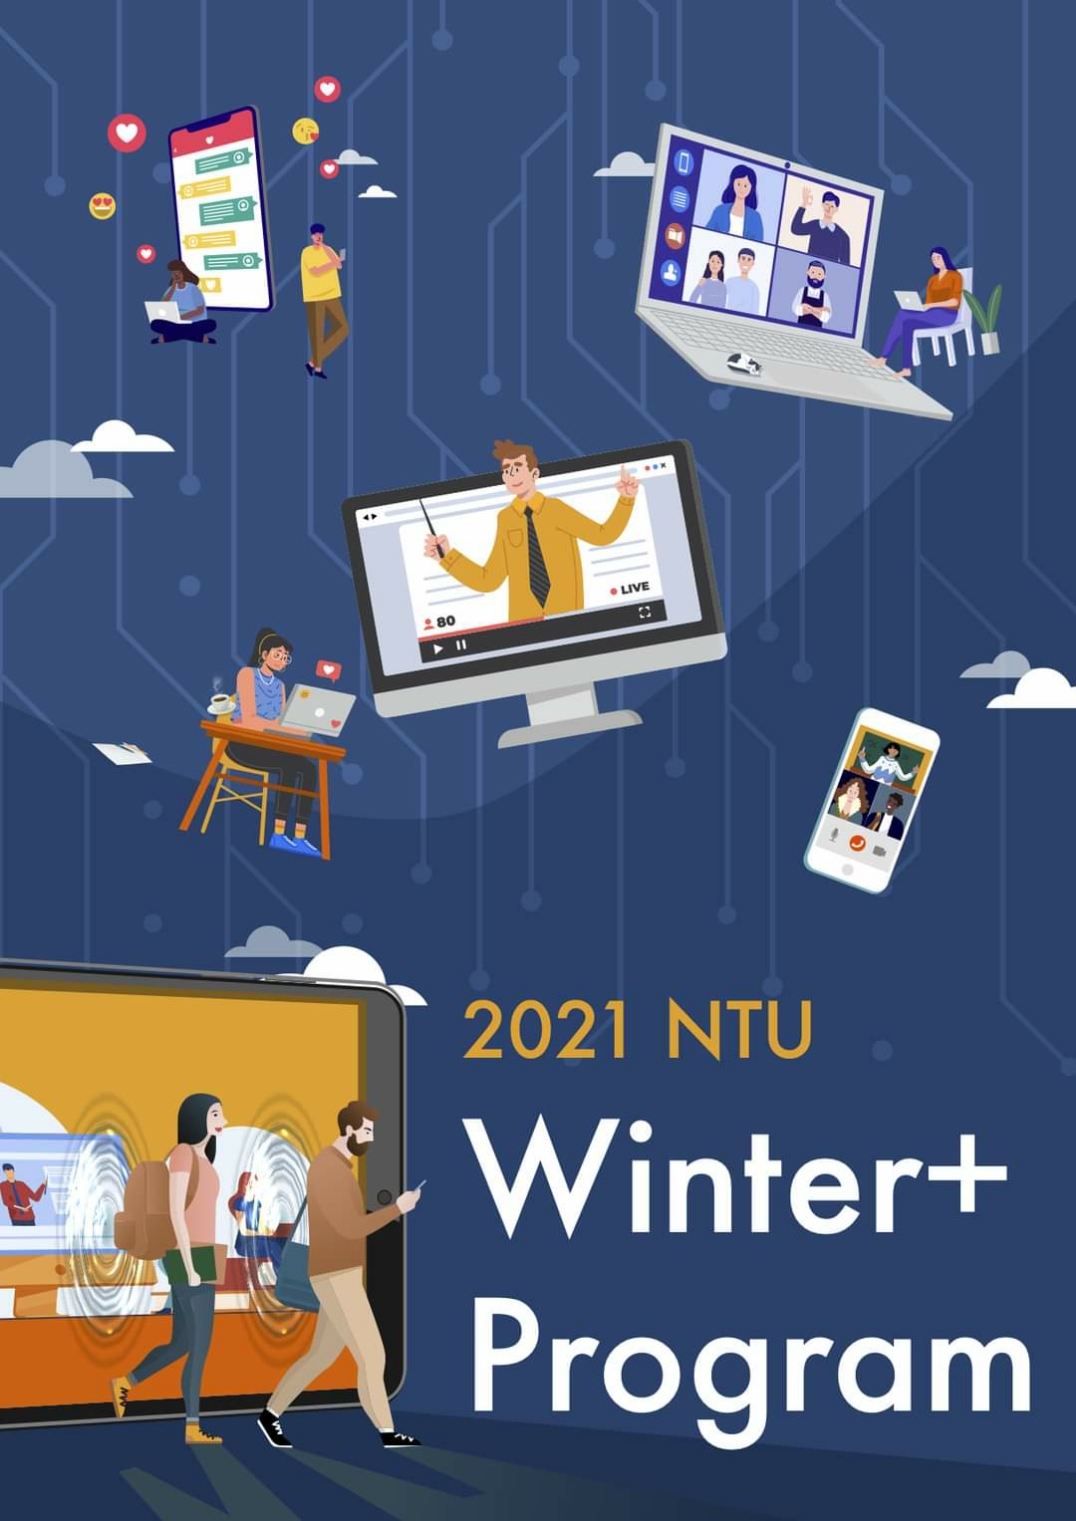 【10.11.2563】มหาวิทยาลัย National Taiwan University เปิดหลักสูตร 2021 NTU Winter +Programs หลักสูตรภาษาและวัฒนธรรมจีนออนไลน์และหลักสูตรการวิจัยและวัฒนธรรมออนไลน์